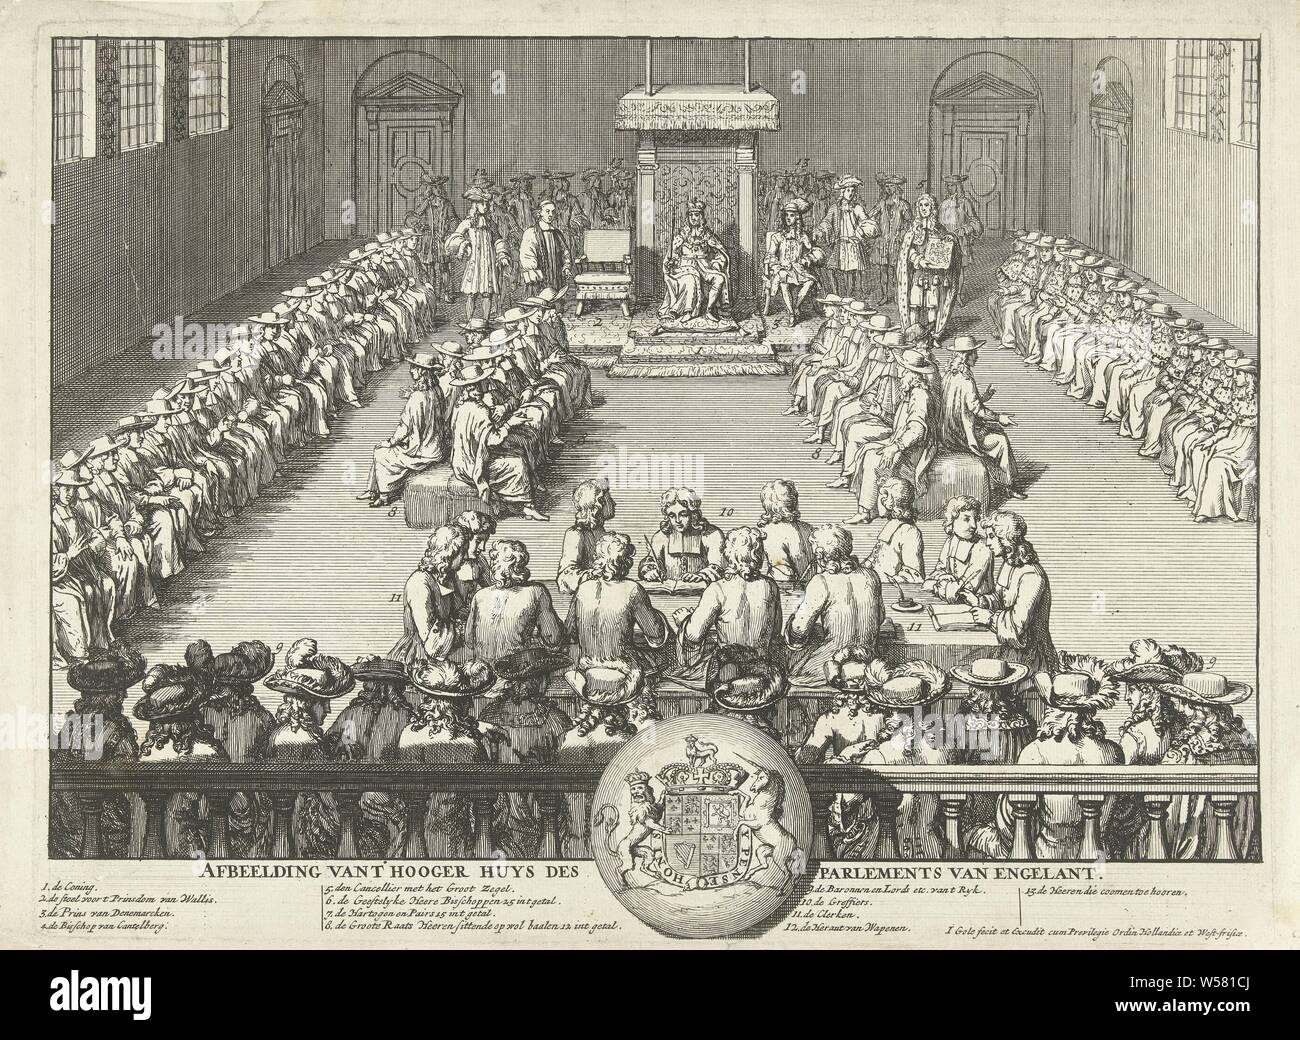 Sessione dell'inglese House of Lords, 1689 foto di t Hooger huys des europeo del Engelant (titolo in oggetto), una sessione della House of Lords è frequentato da un re. Centrale. Il re sul suo trono circondato dai signori, seduti su dei cuscini. Nella parte anteriore la cancellieri intorno a un tavolo. In didascalia la leggenda 1-13 e la British Royal arma. Le prestazioni si basa su una performance in cui re Guglielmo III partecipa alla riunione, 1689., Upper House, Senato, le Case del Parlamento (Londra), William III (il principe di Orange e Re d'Inghilterra, di Scozia e Irlanda), Jacob Gole (menzionato Foto Stock